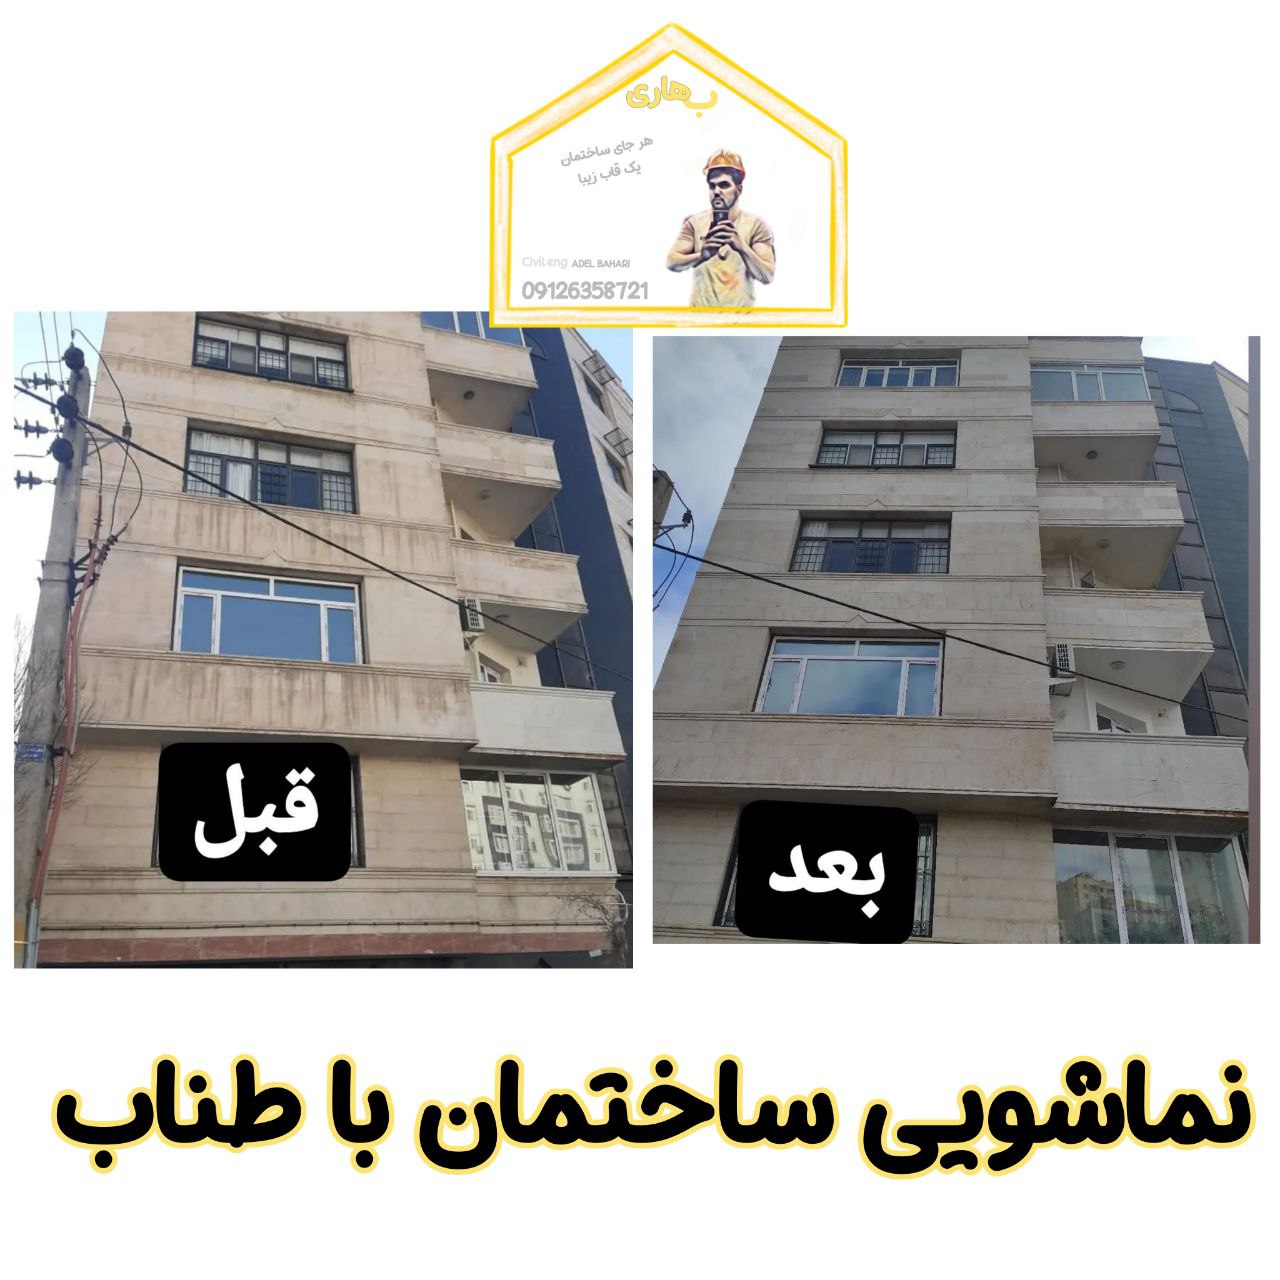 لکه برداری سنگ نمای ساختمان با نماشویی در تهران